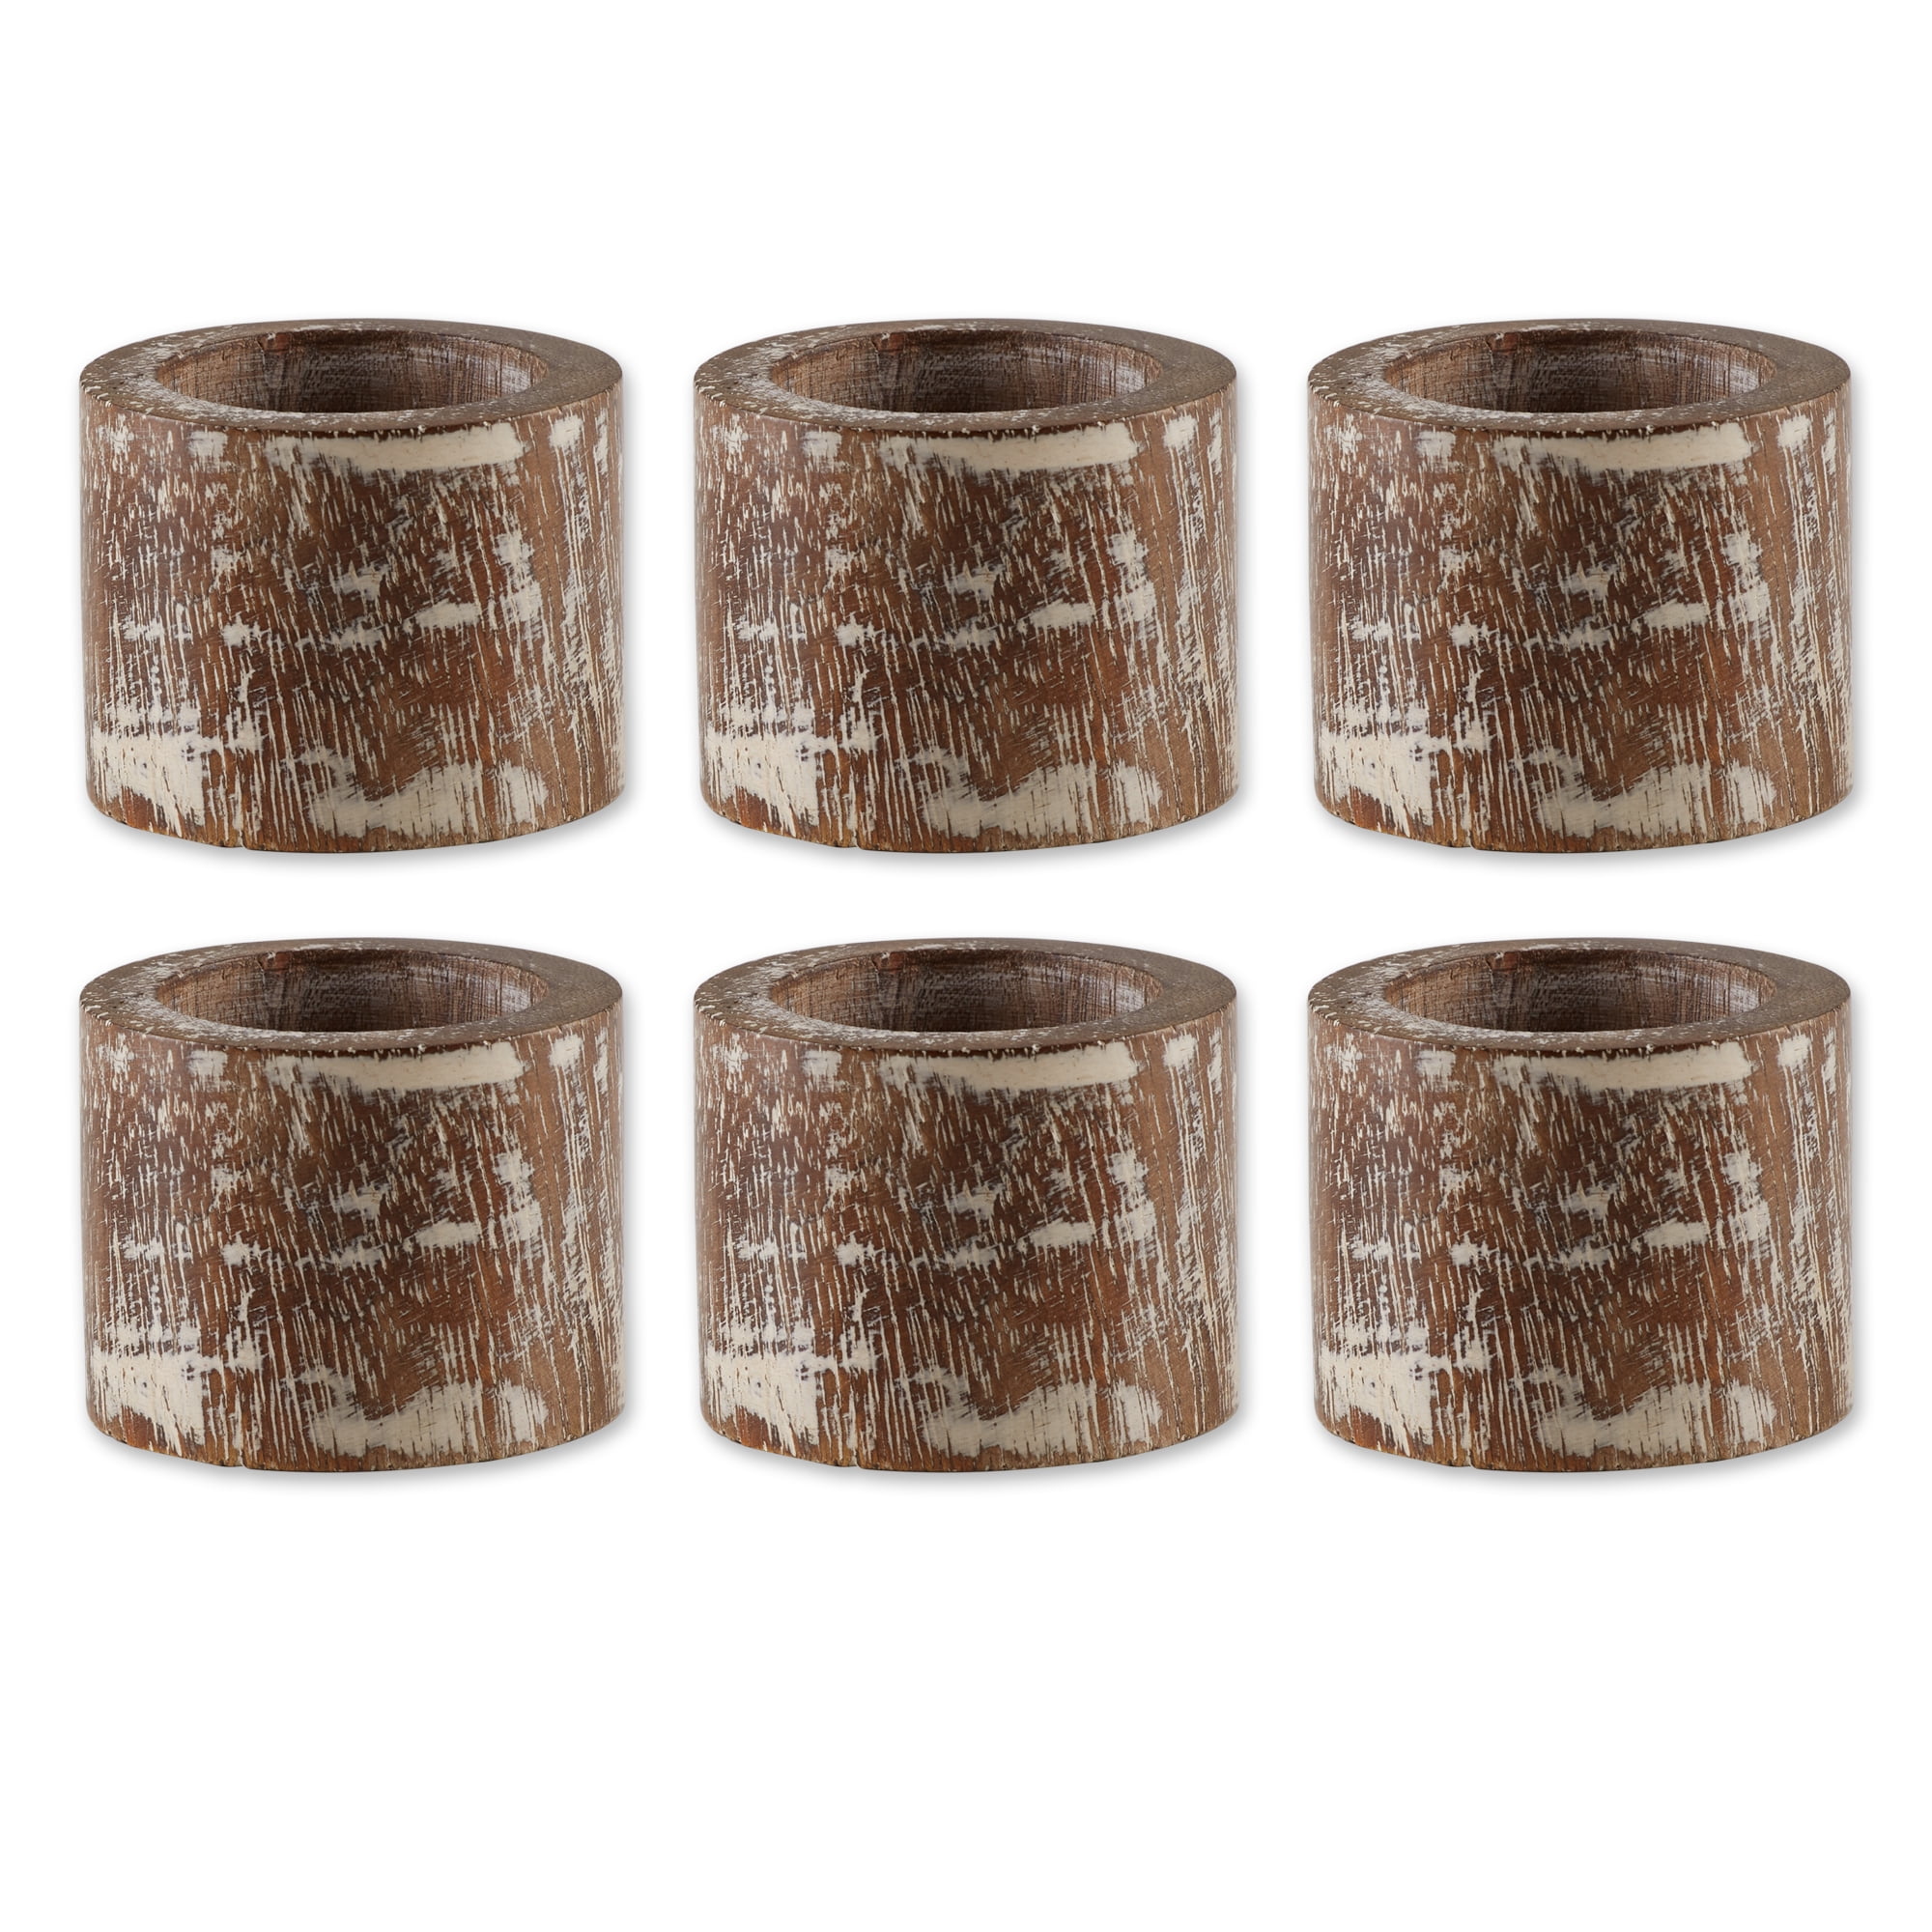 Picture of Design Imports CAMZ12240 White Wash Finish Wood Band Napkin Ring - Set of 6